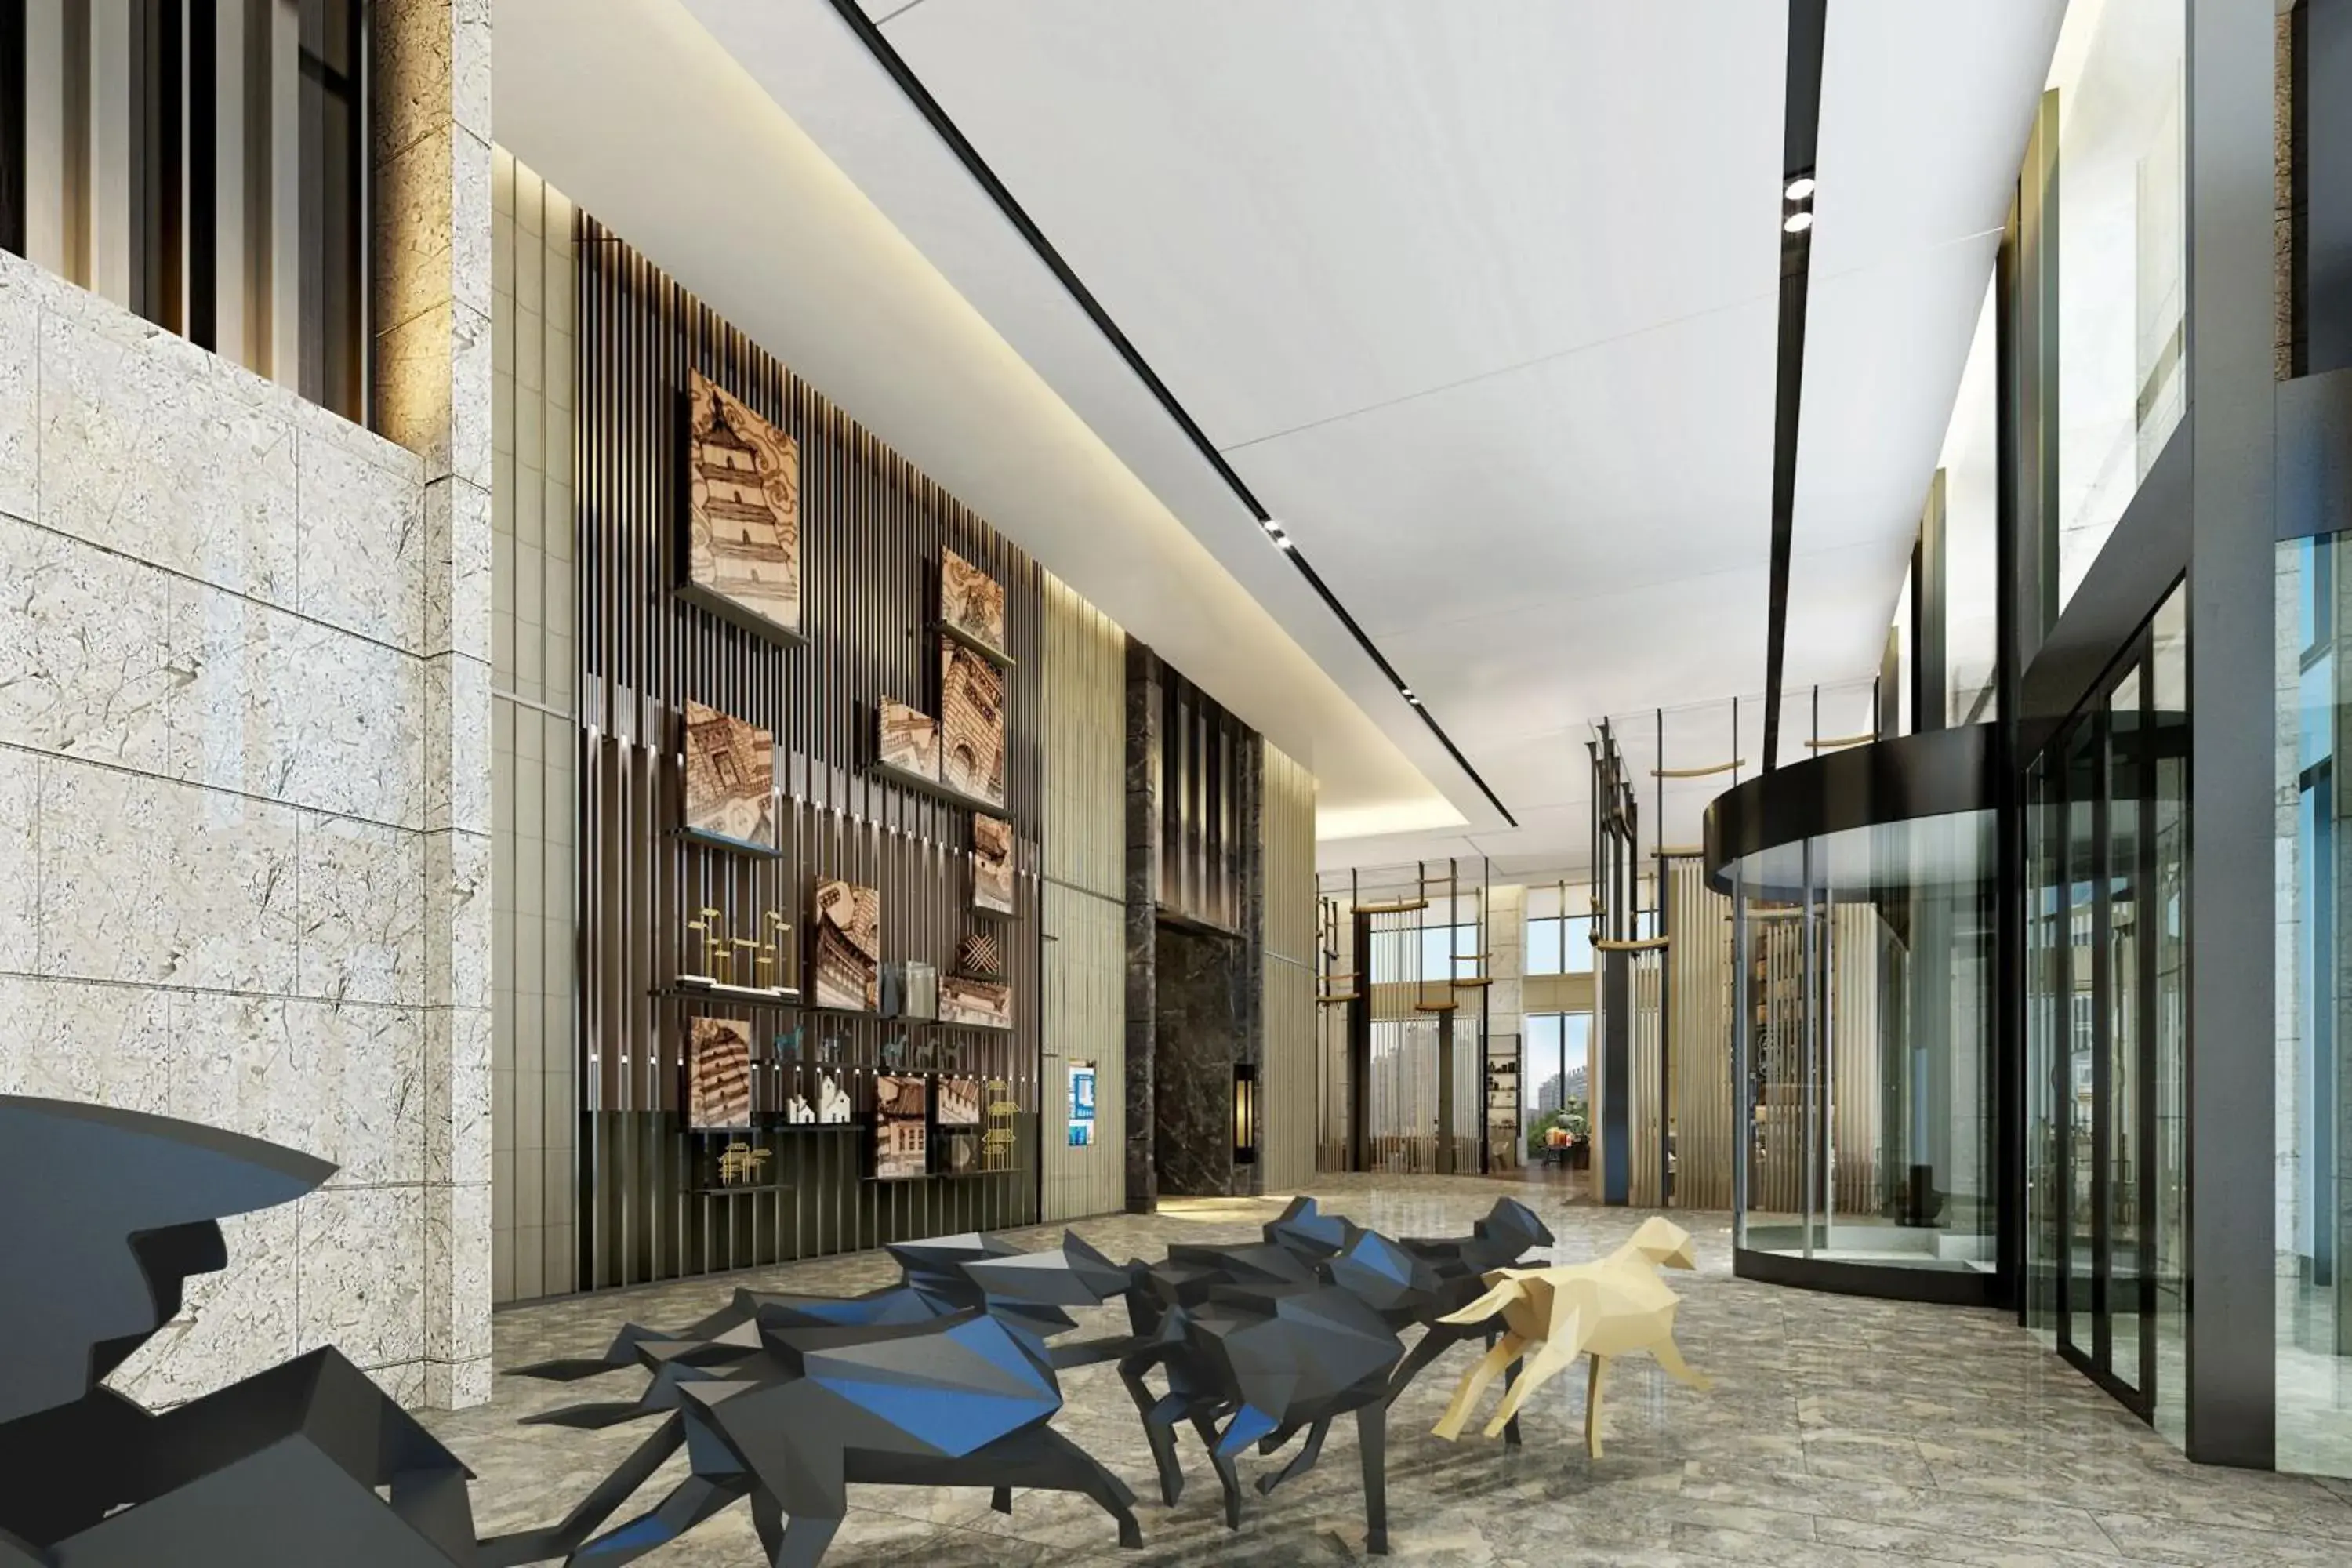 Lobby or reception in JW Marriott Hotel Xi'an